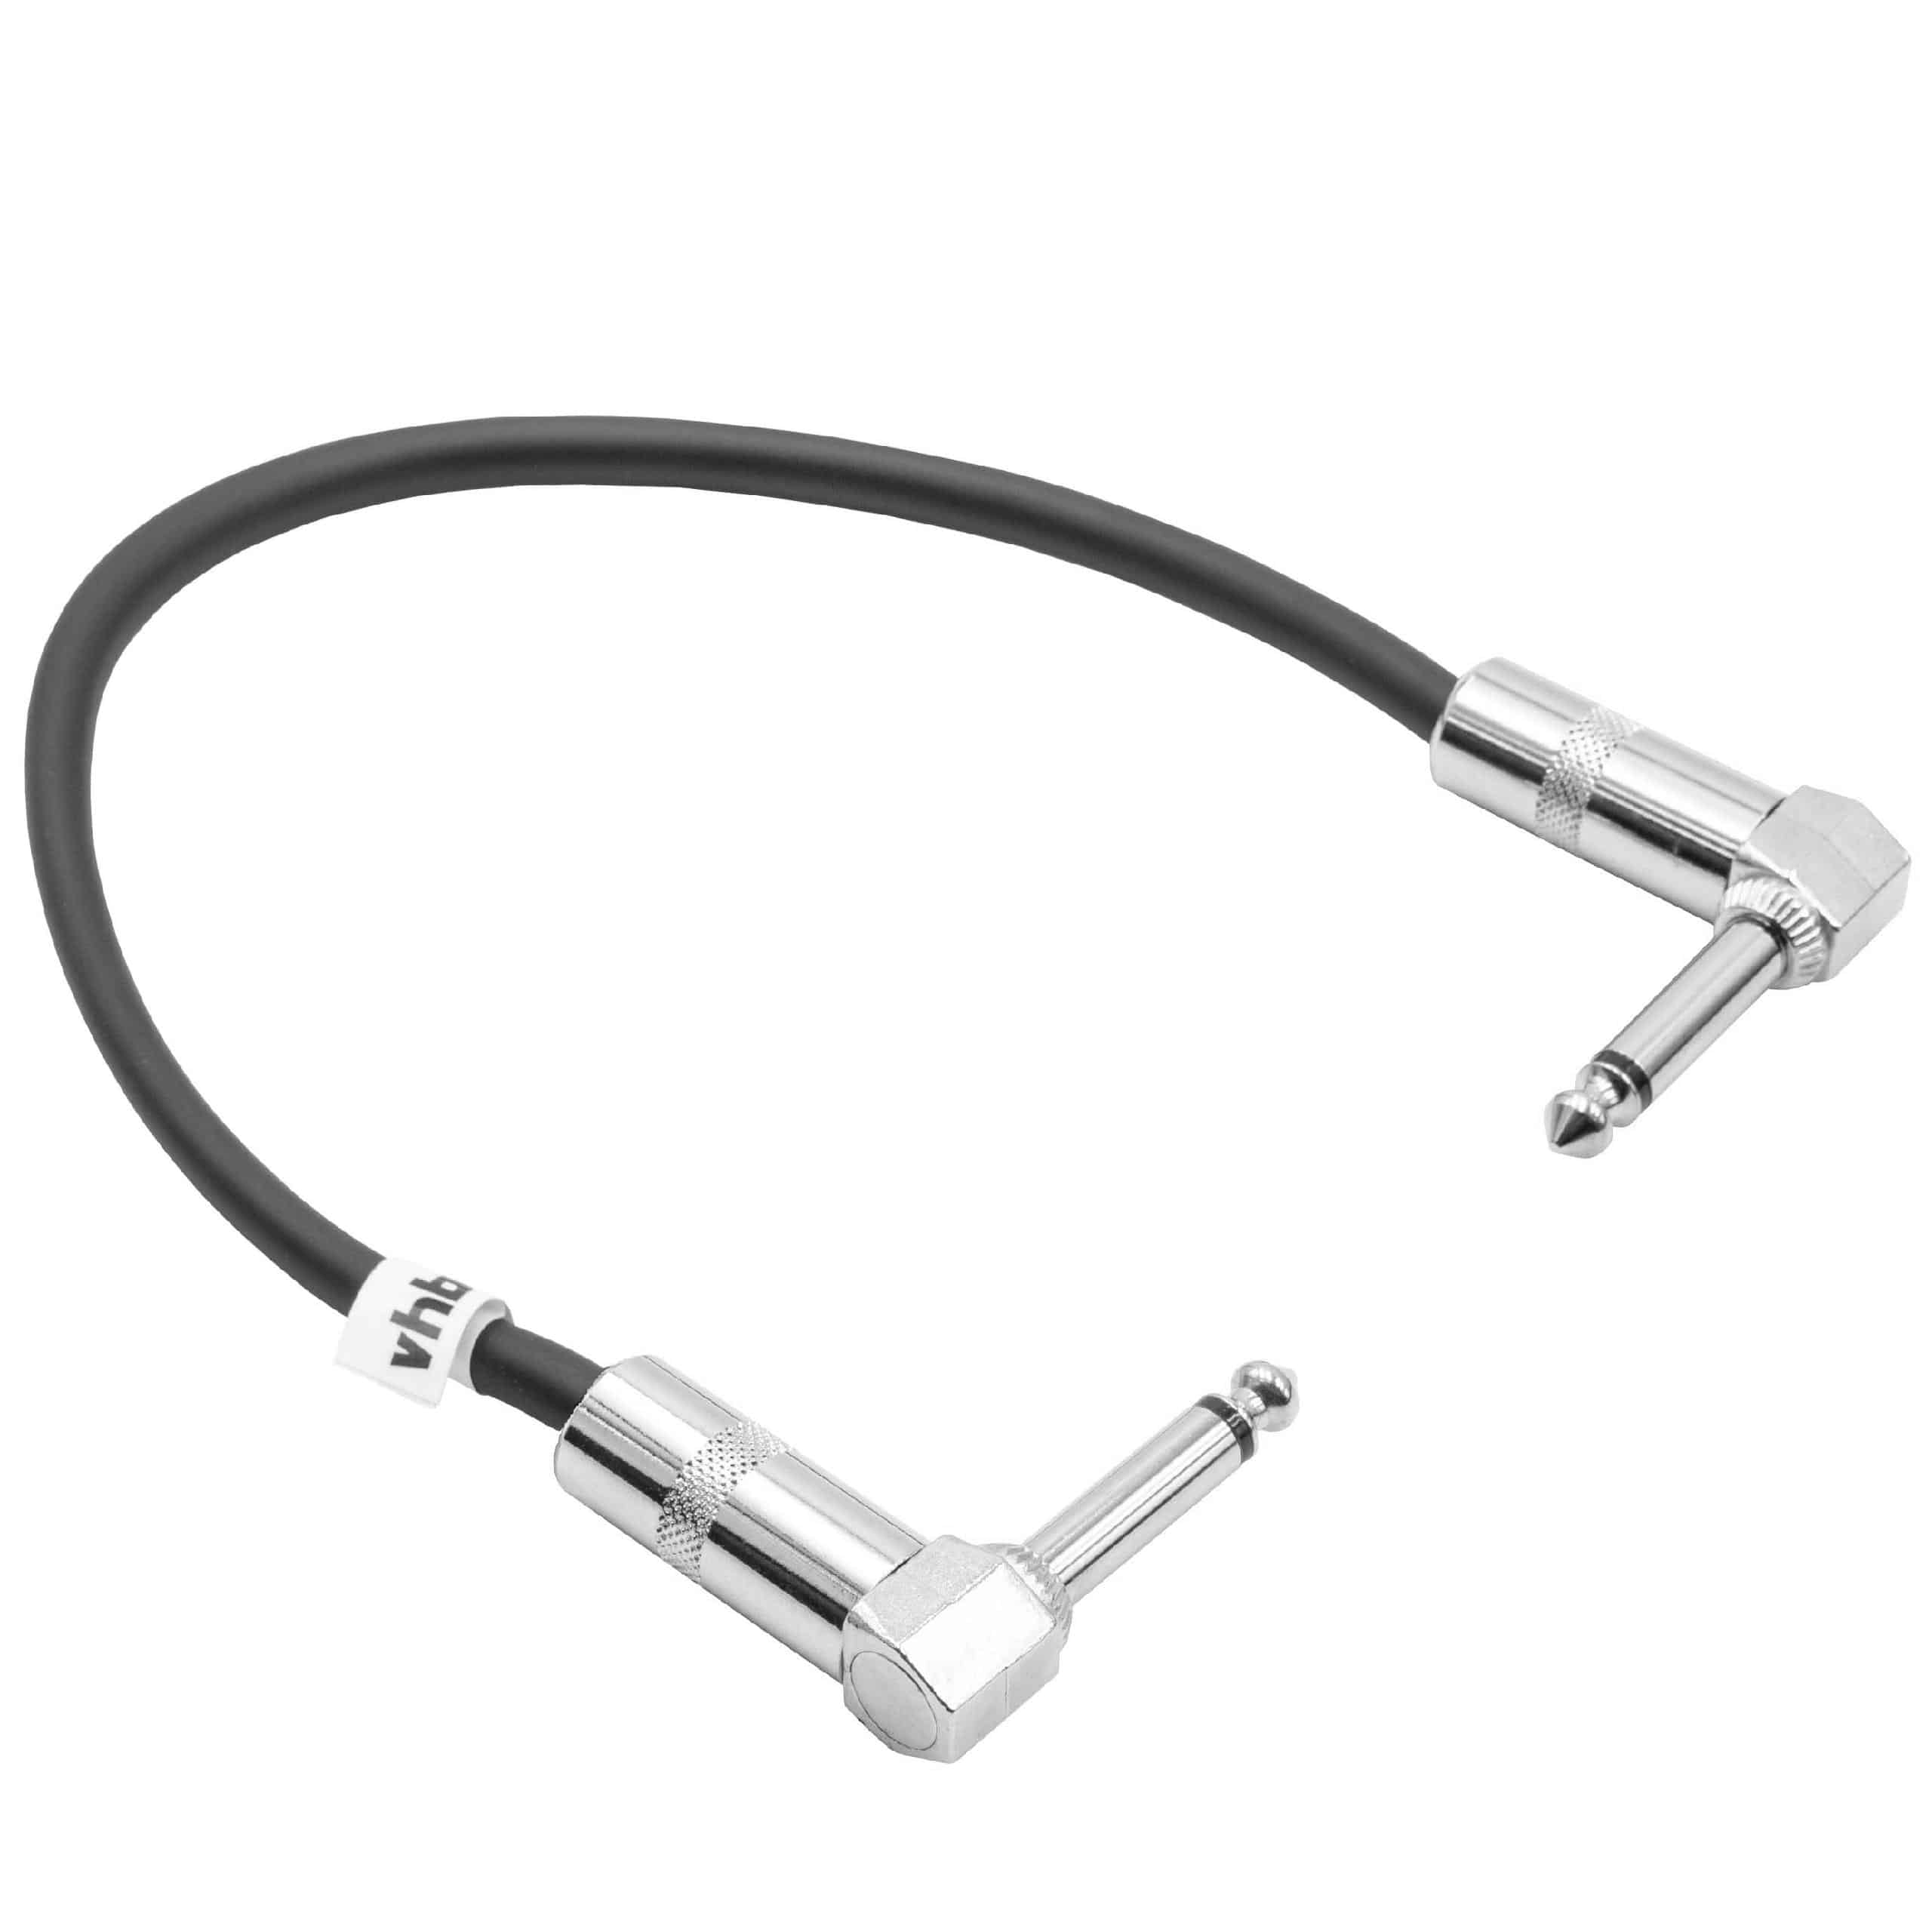 Kabel krosowy do efektów gitarowych 30 cm - kabel gitarowy jack 6,35 mm, kątowy, czarny / srebrny